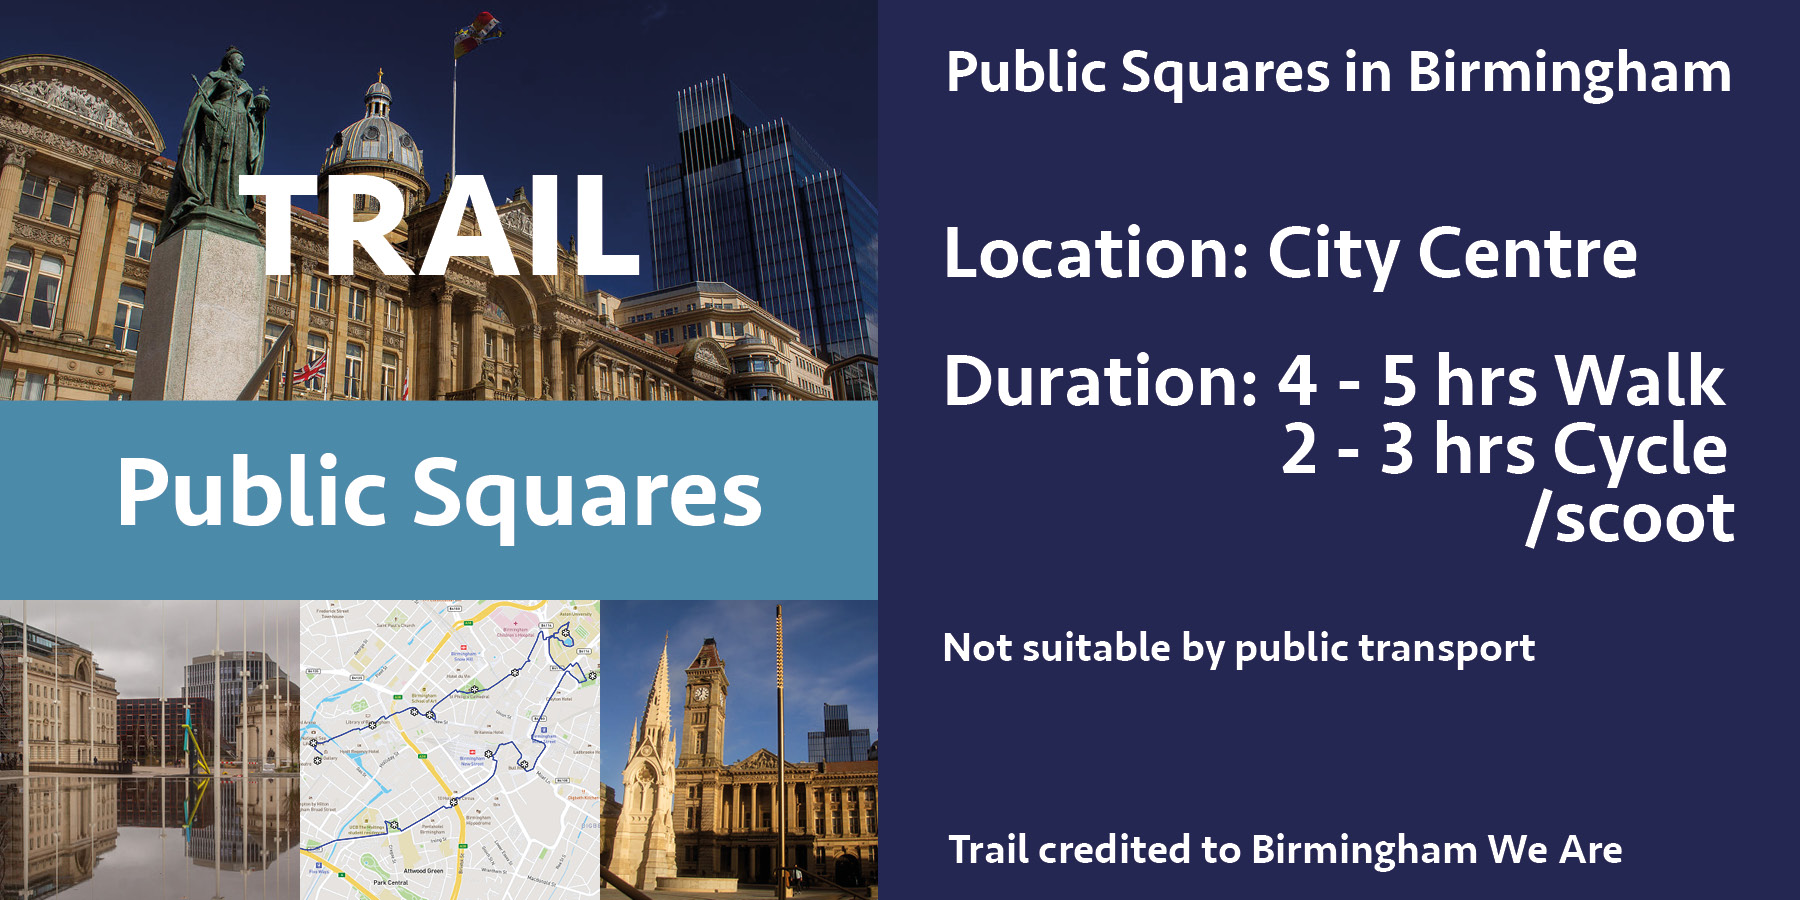 Public square trails in Birmingham